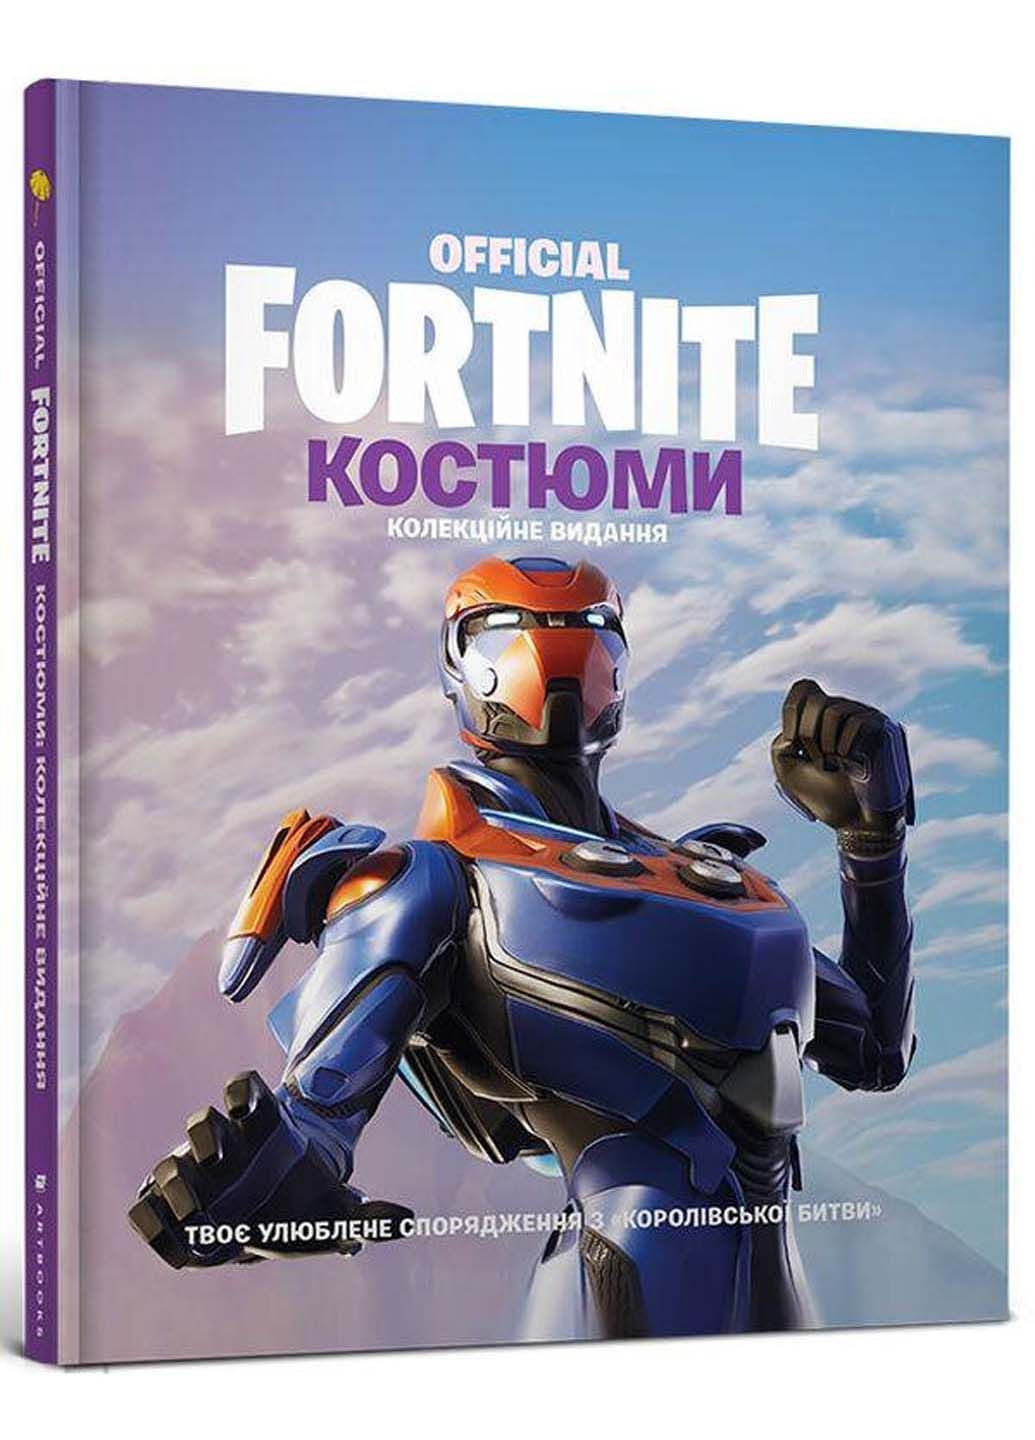 Книга Epic Fortnite Official. Костюми. Колекційне видання 2020р 192 с Артбукс (293057792)